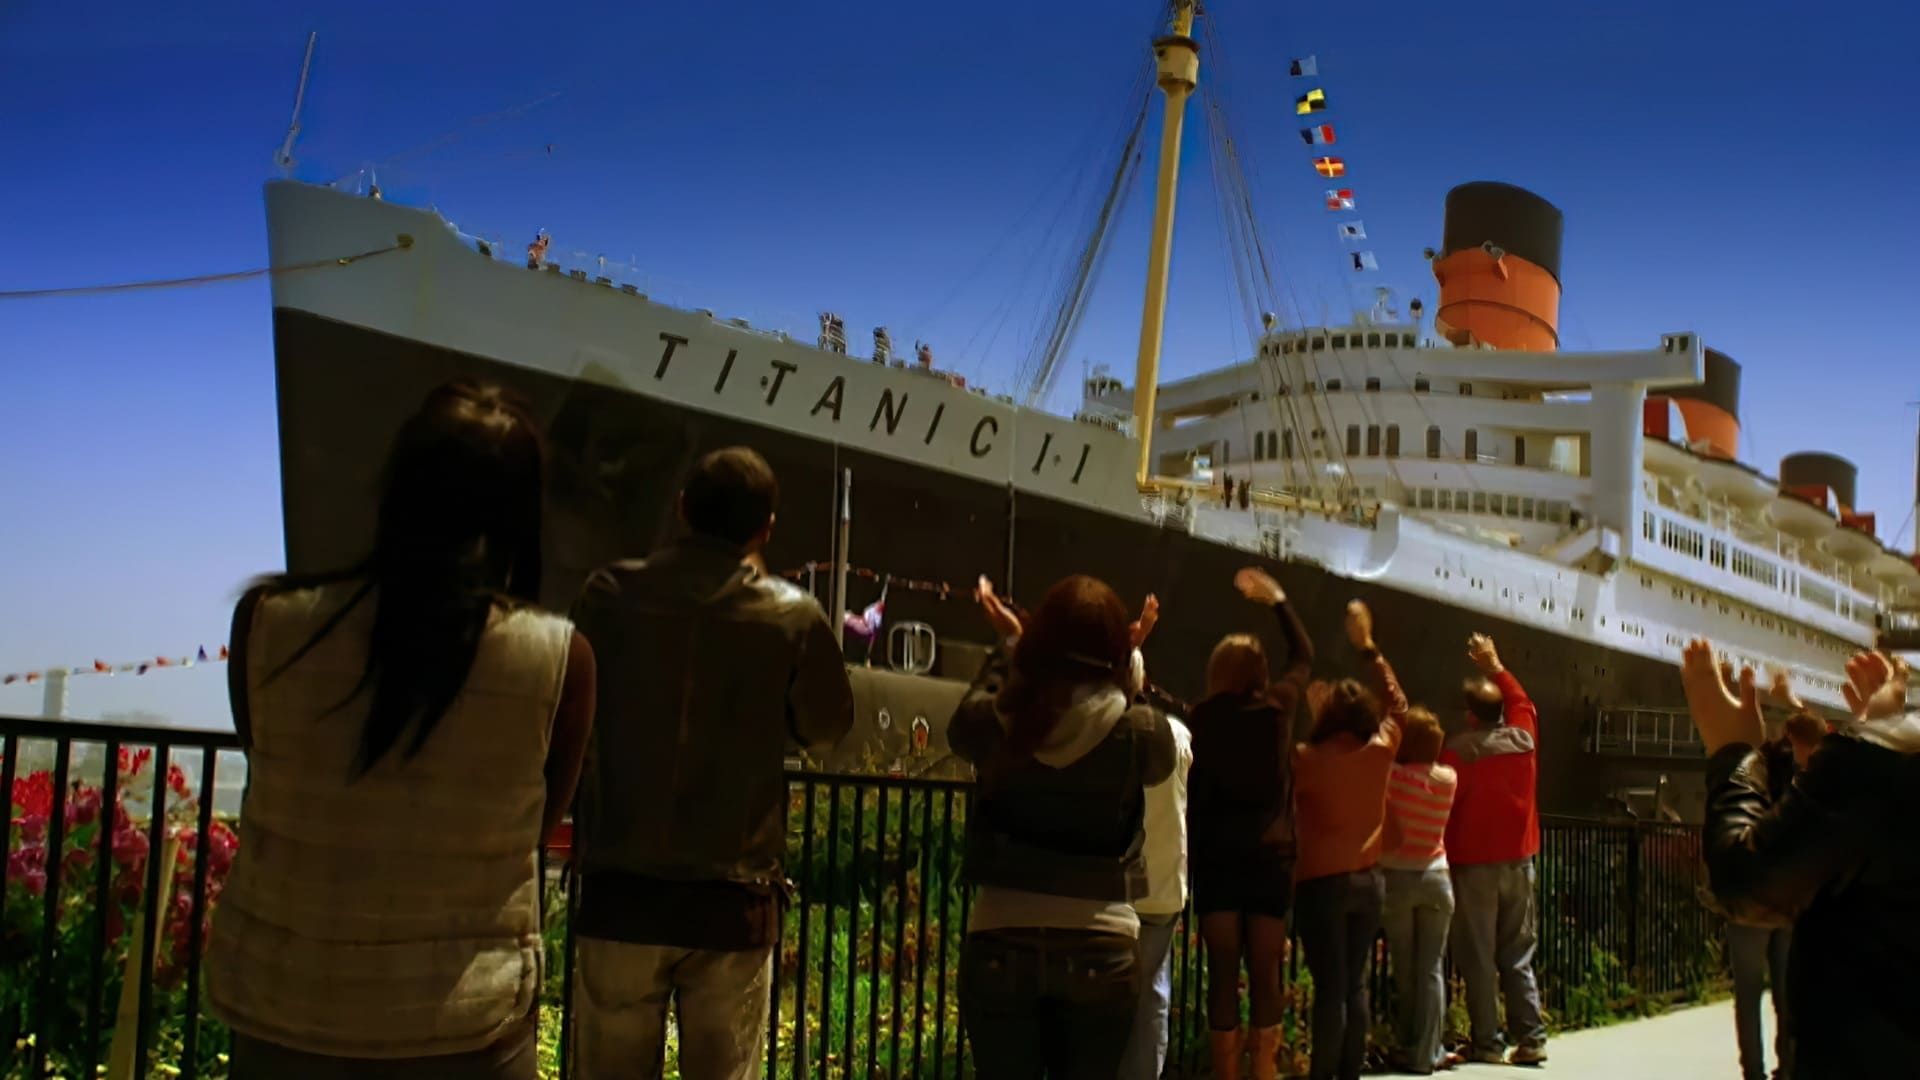 Titanic II Backdrop